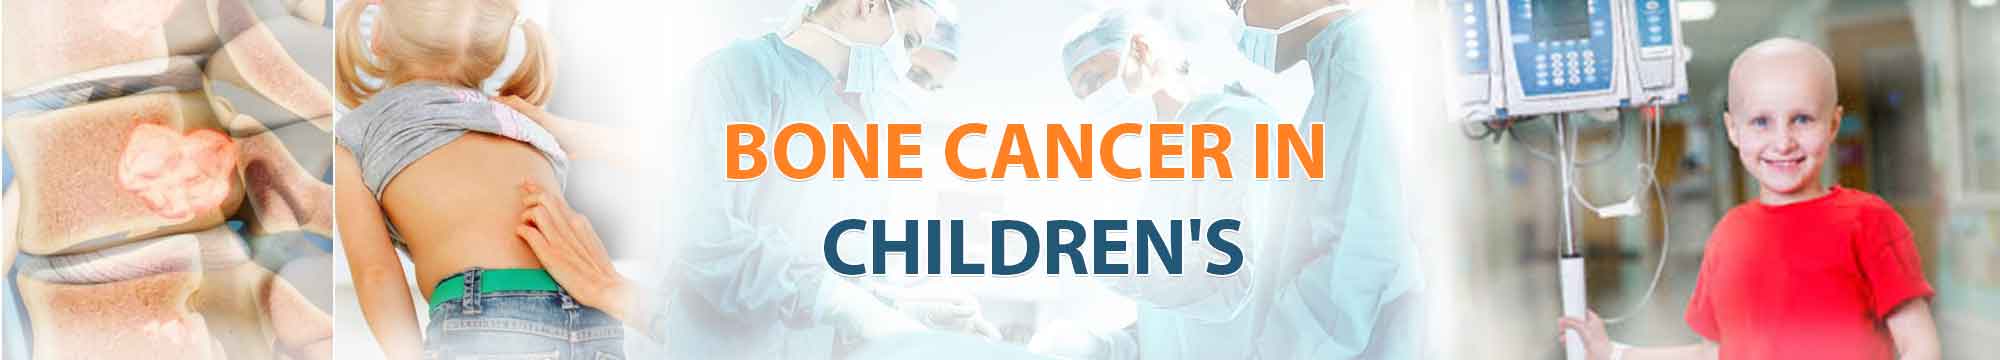 Bone Cancer in Children